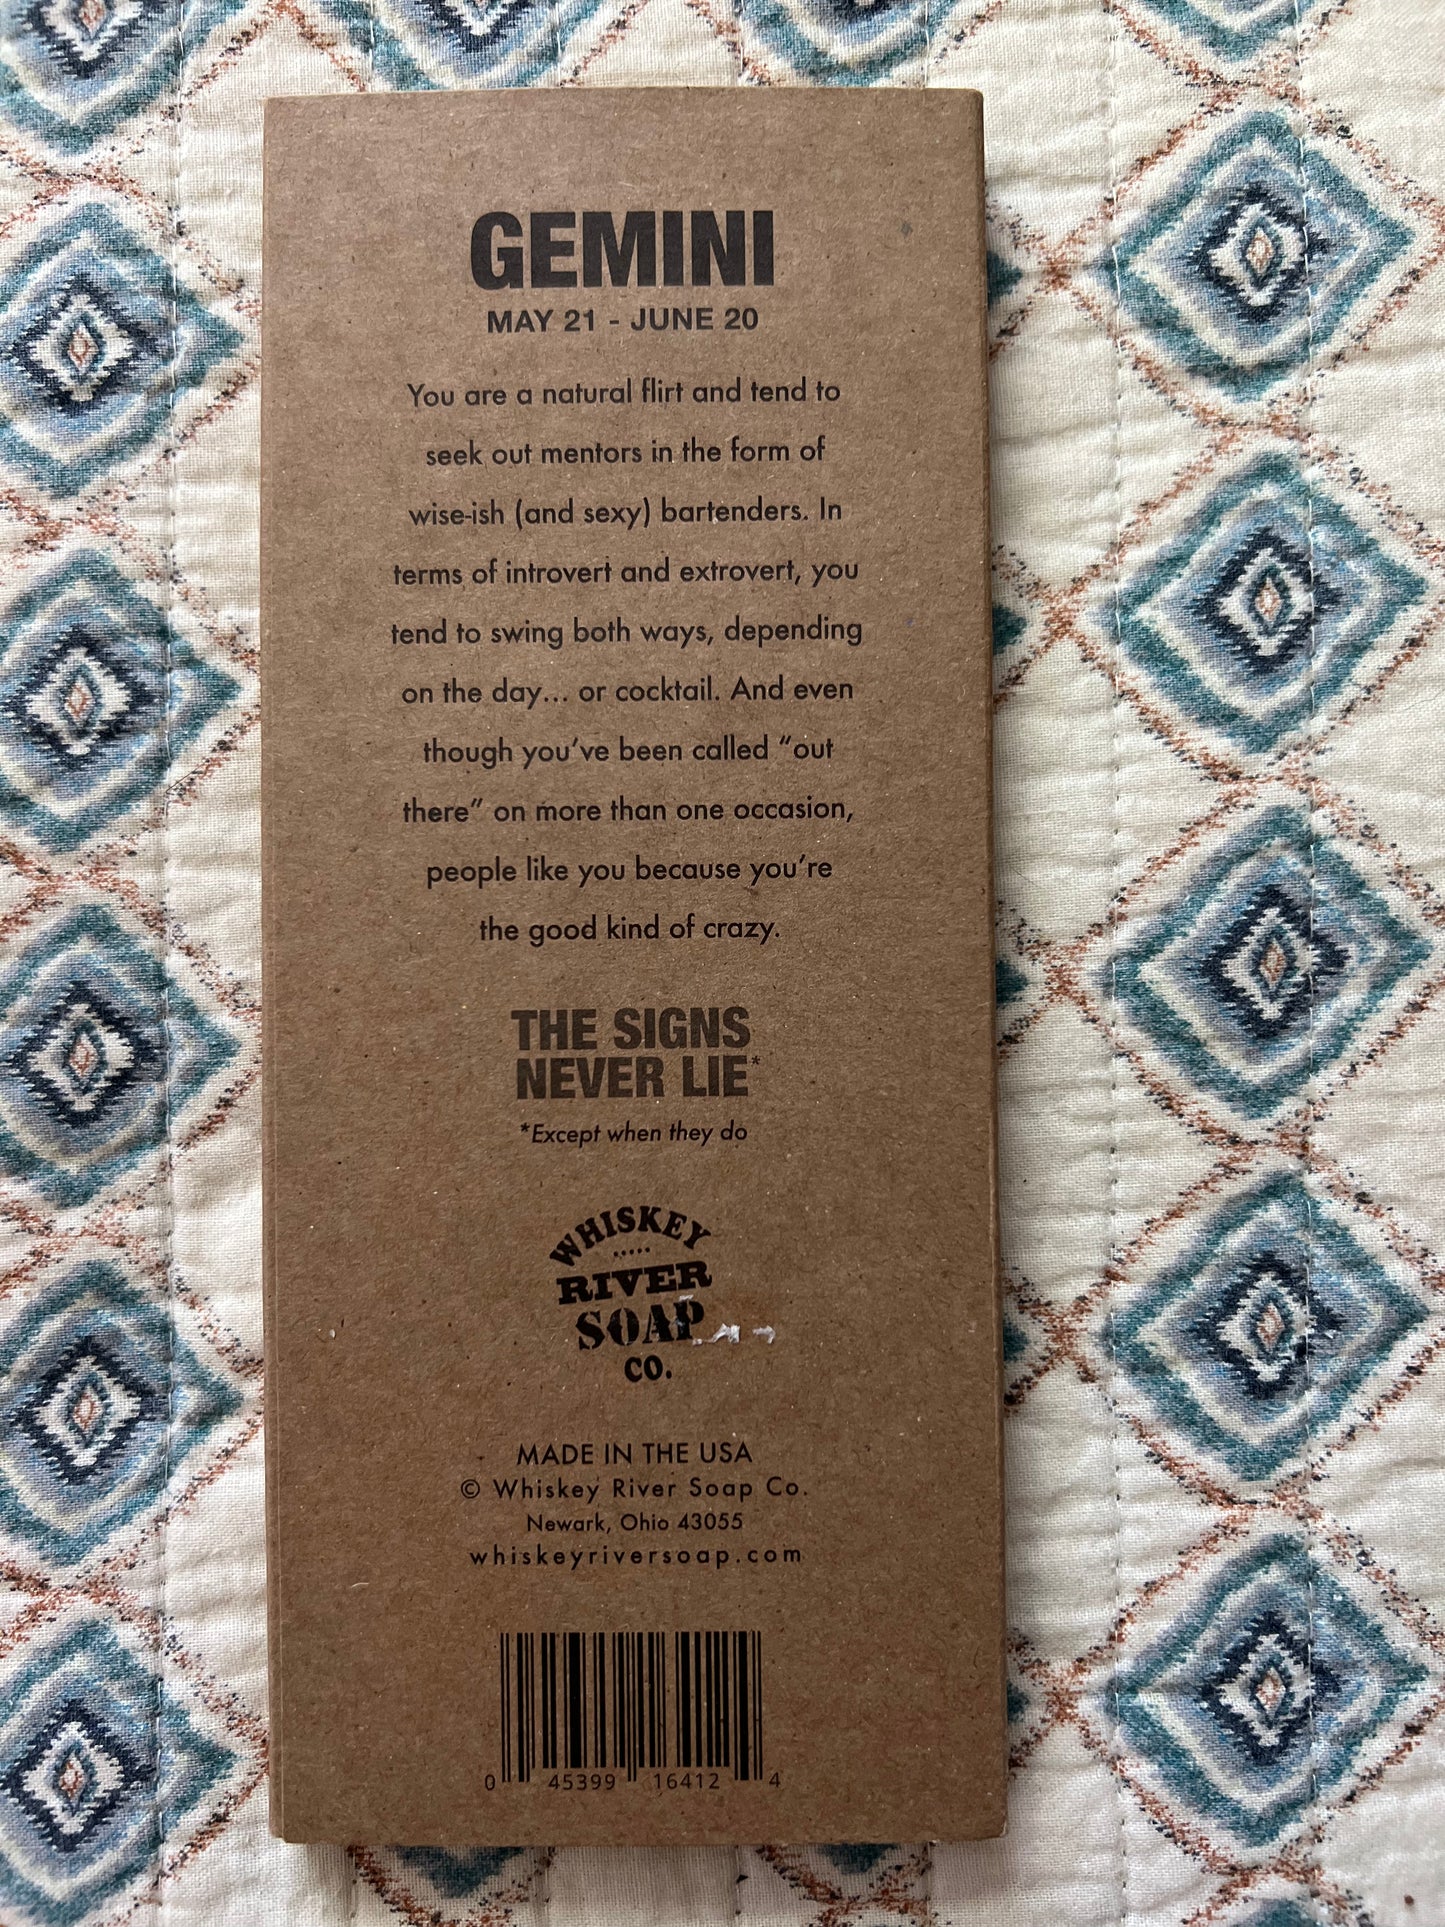 Gemini Trait Pencils